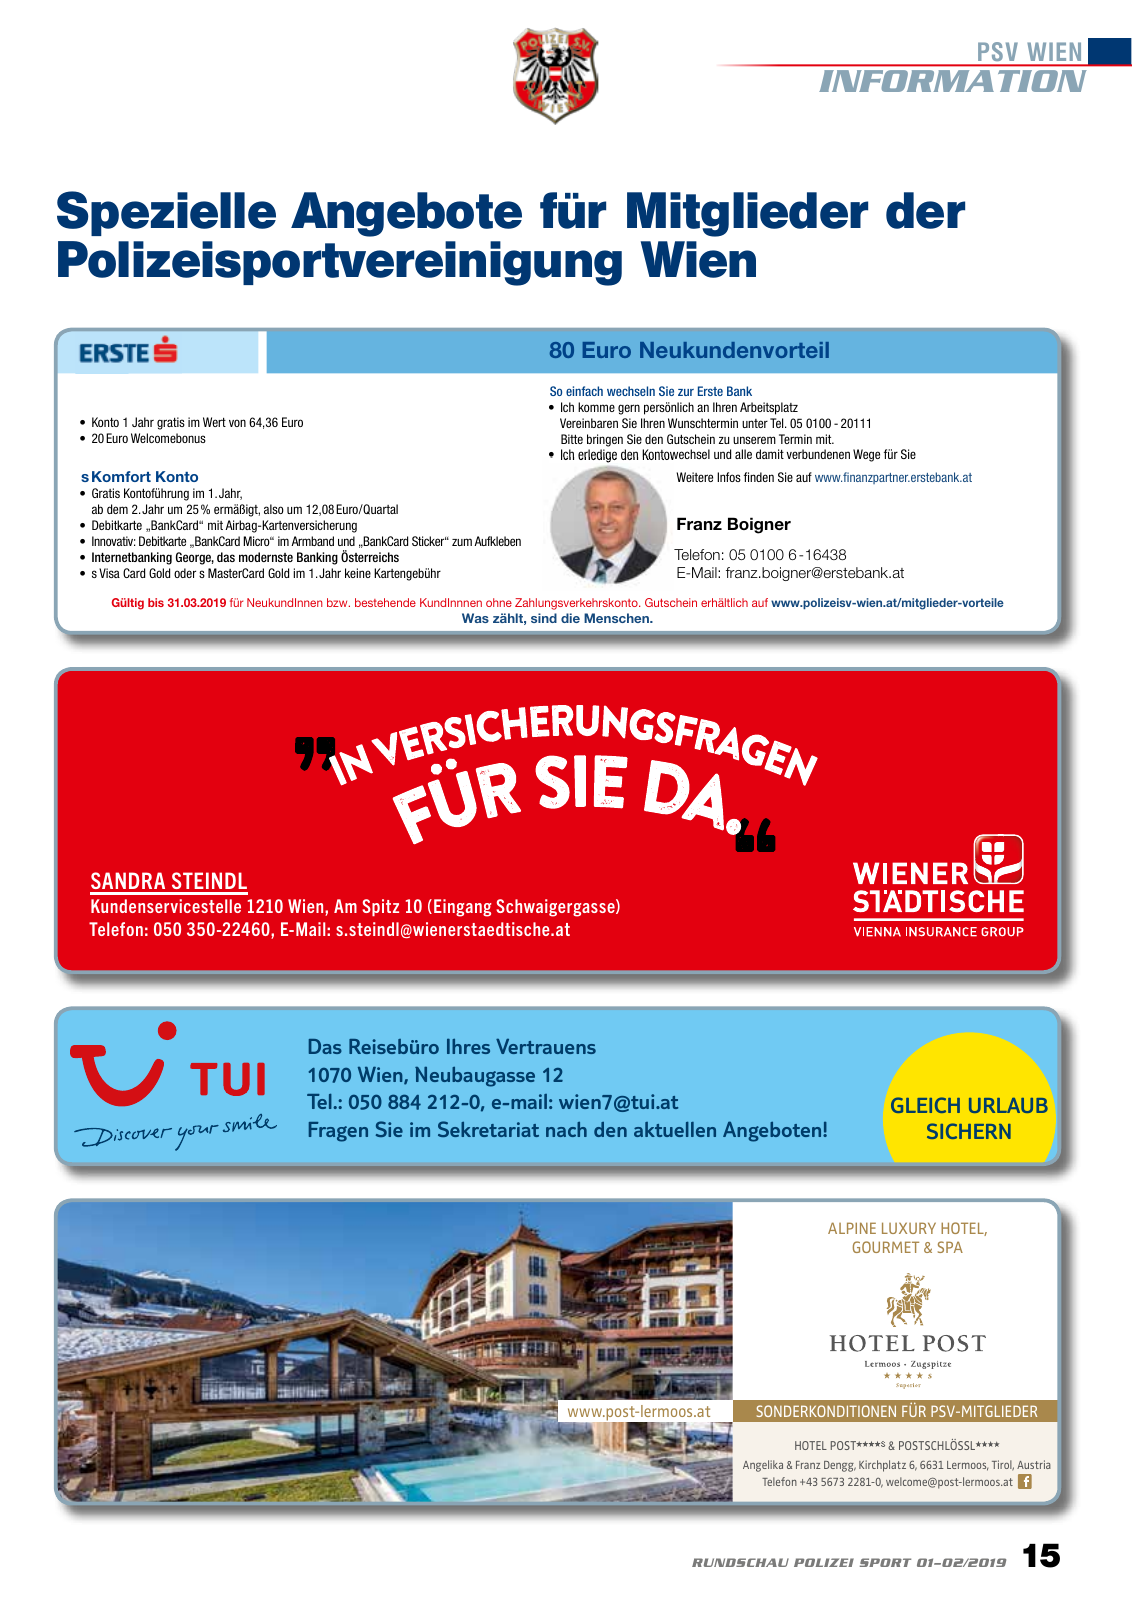 Vorschau Rundschau Polizei Sport 01-02/2019 Seite 15